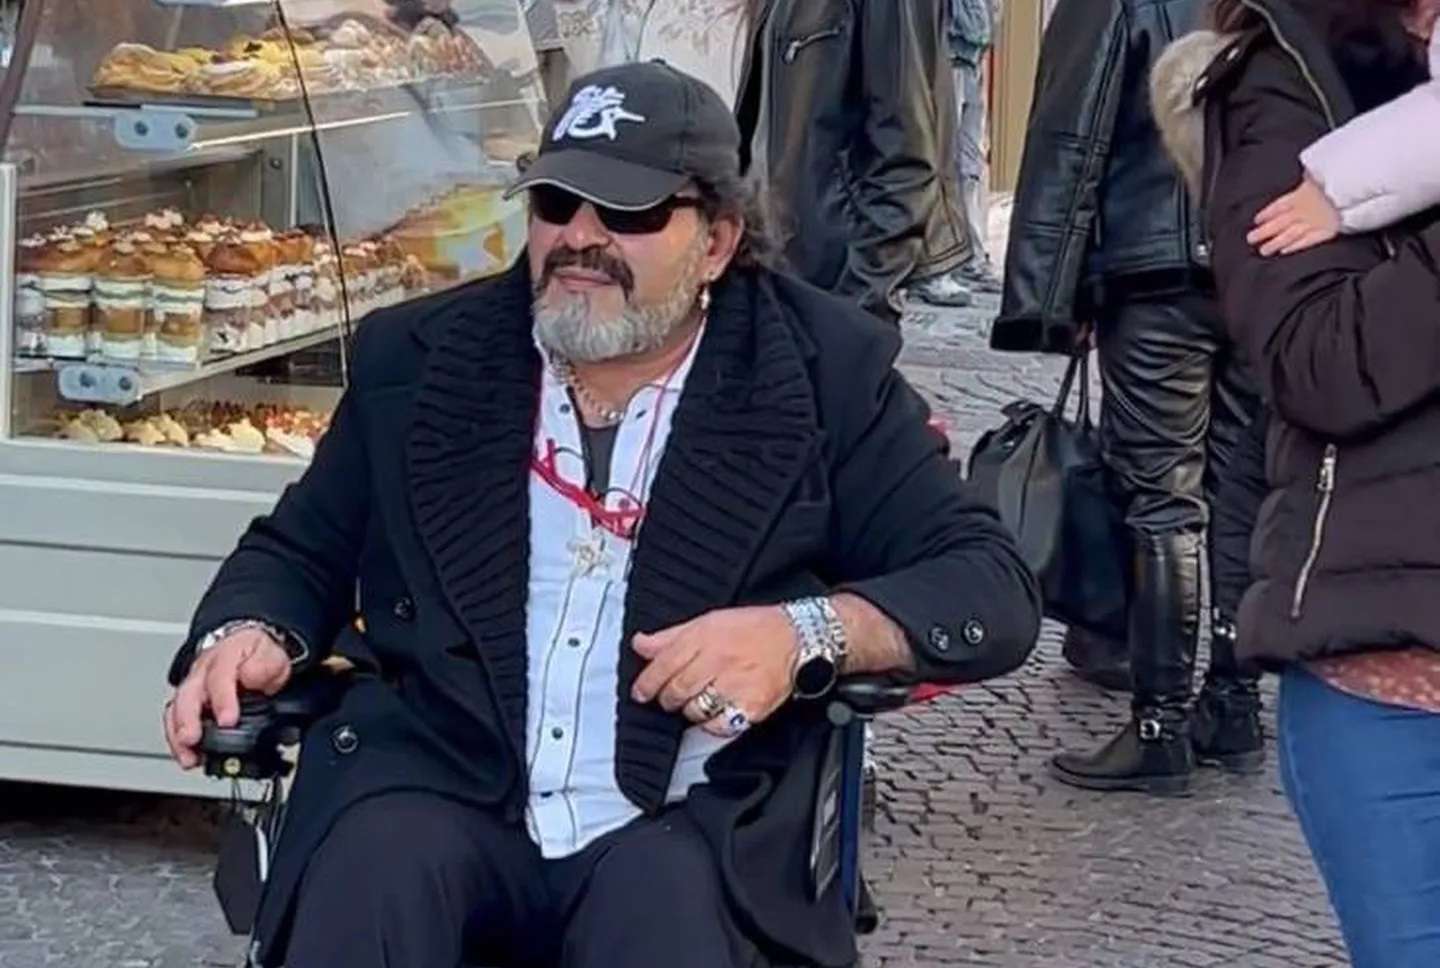 Paseaba por Nápoles y se encontró con el “clon” de Maradona: ¿es una señal?